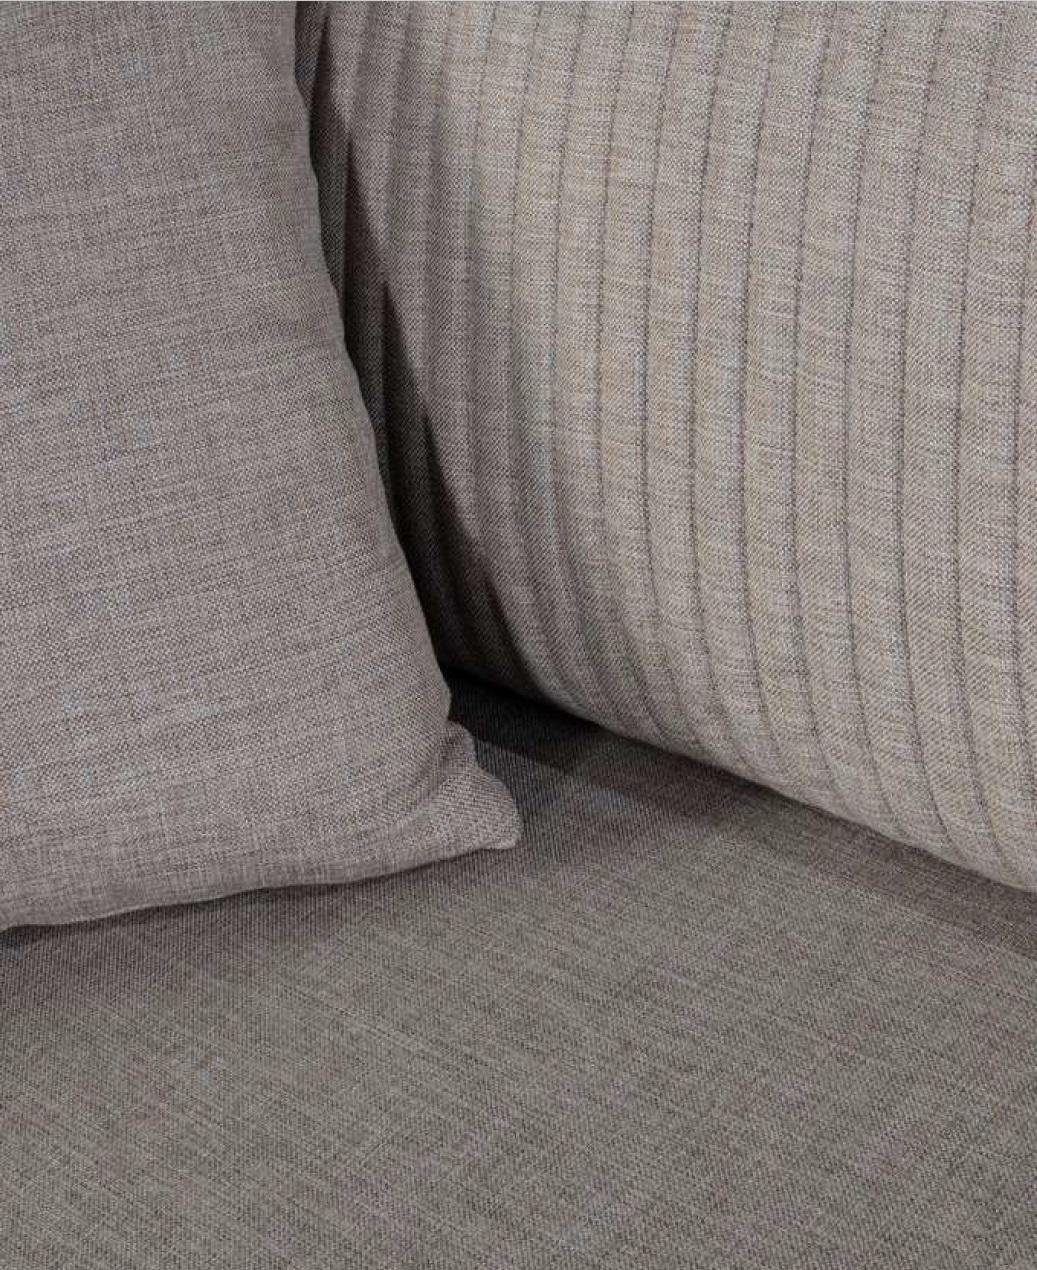 Luxus Dreisitzer JVmoebel Möbel 3 Sofa Designer Couchen Textil Sofa Neu Sitzer Grau